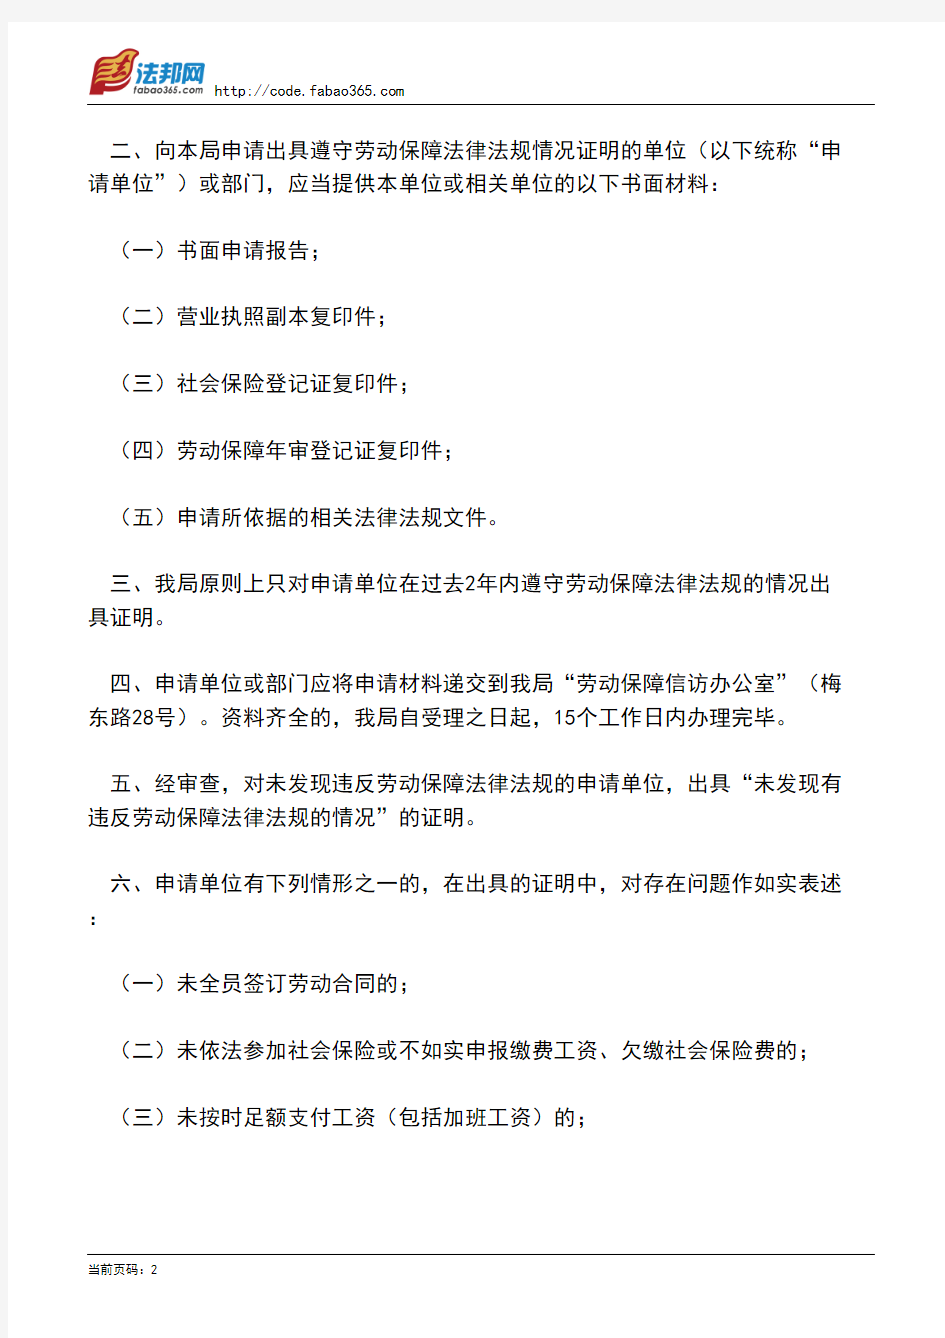 广州市劳动和社会保障局印发《关于对用人单位遵守劳动保障法律法规情况出具证明的办事指南》的通知